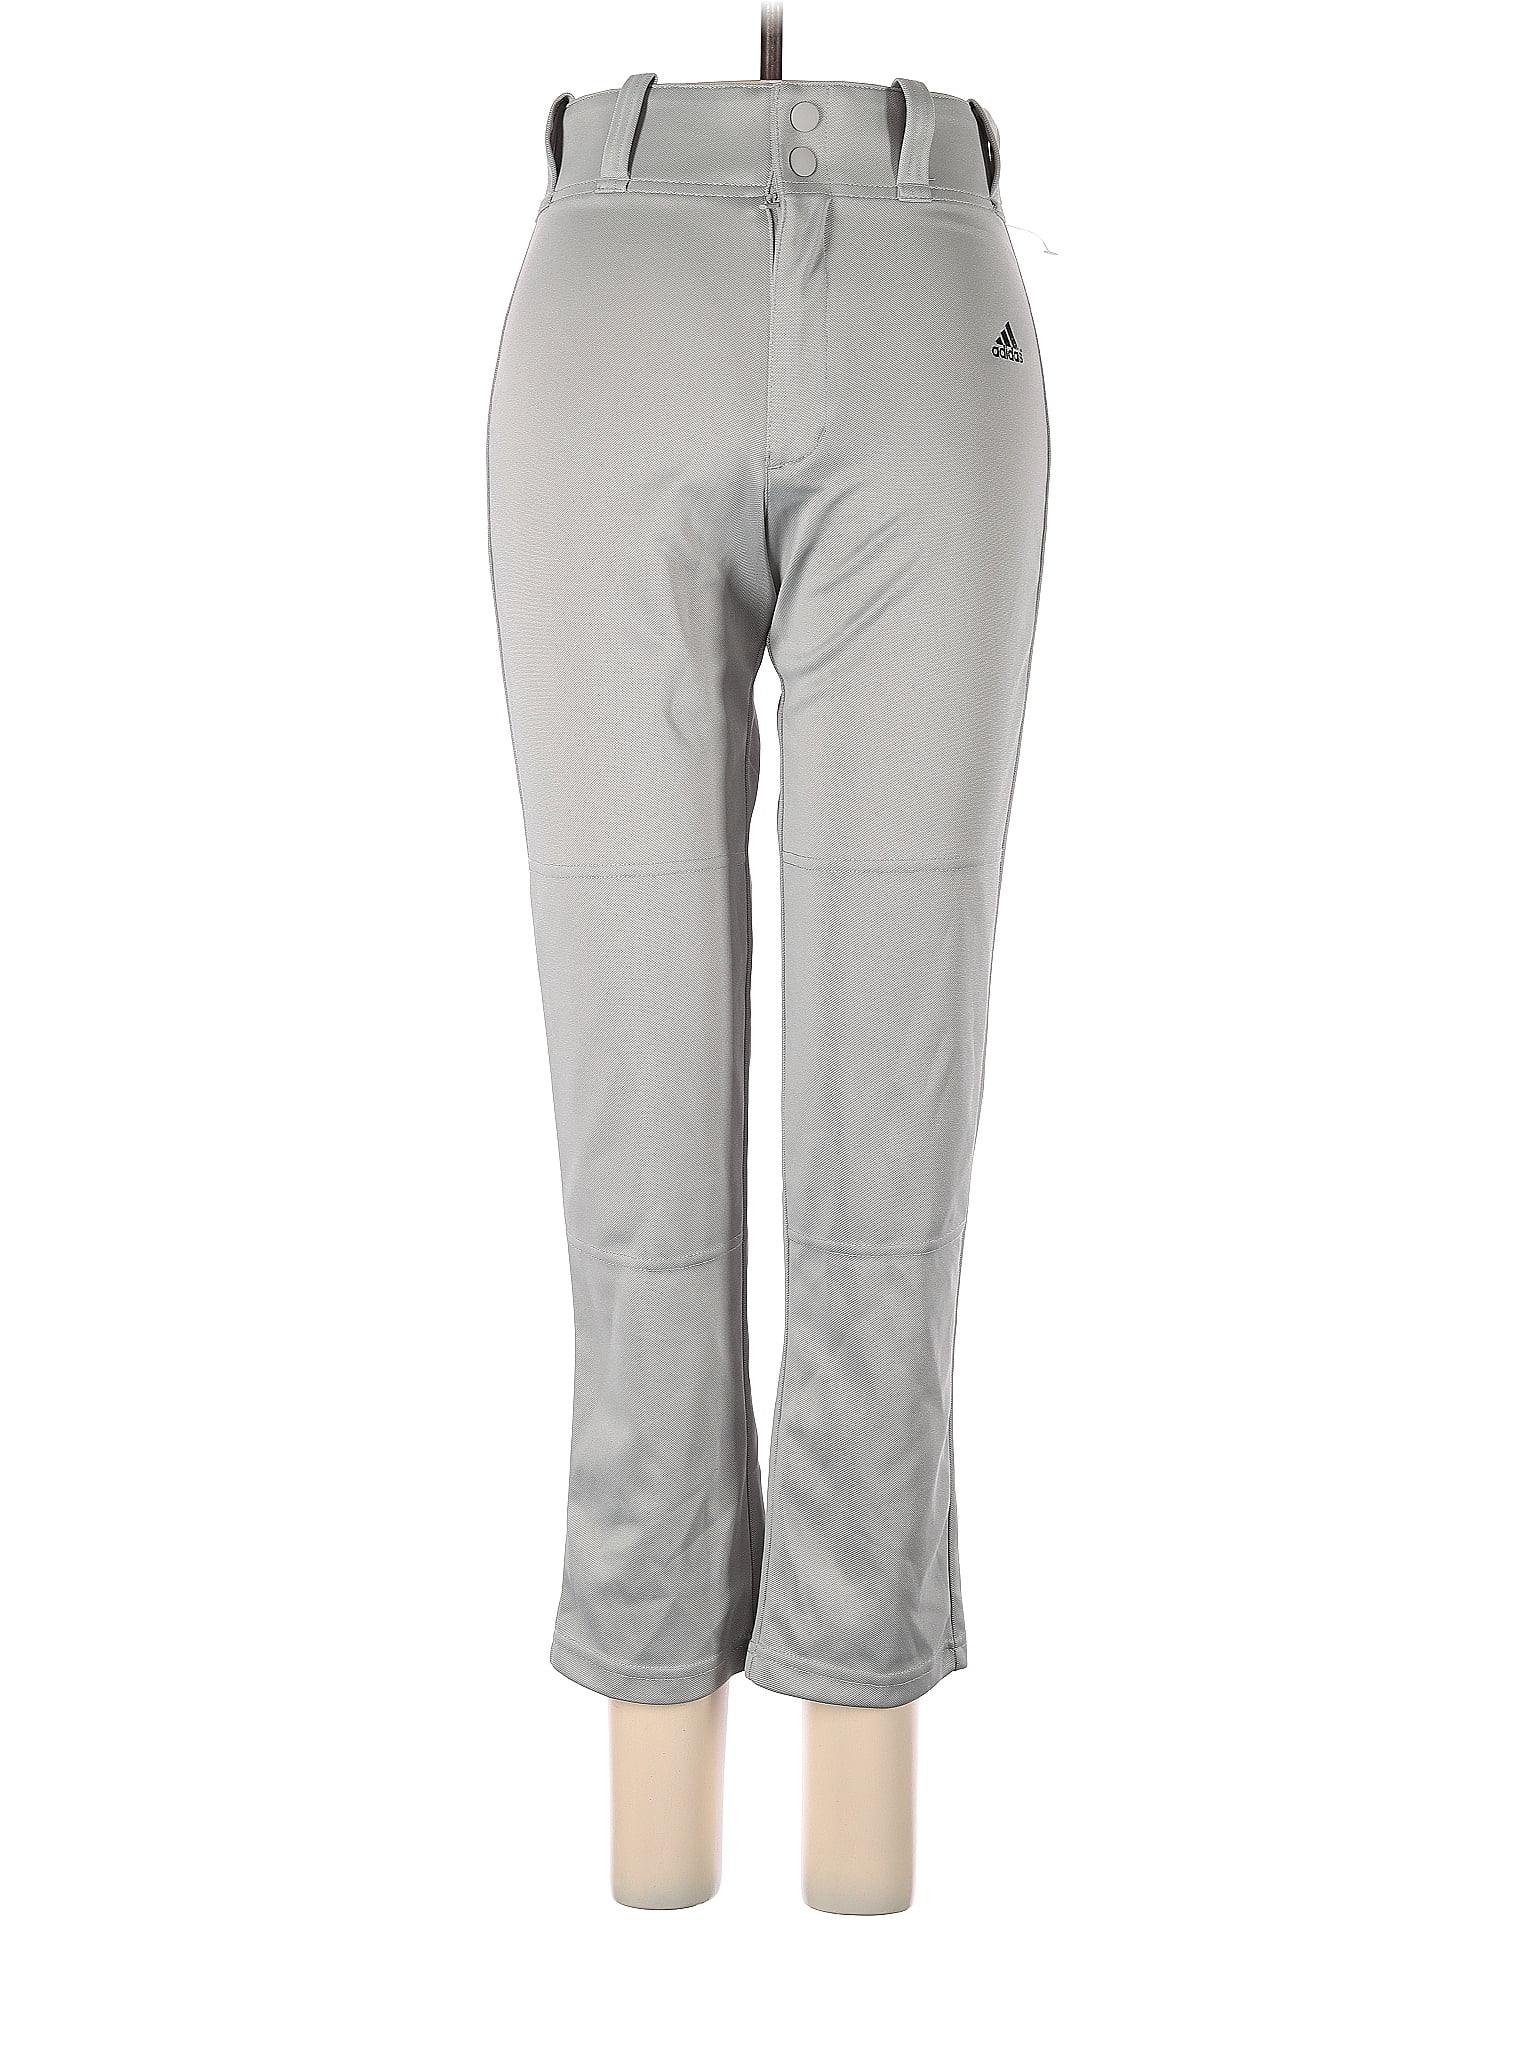 Halara Gray Active Pants Size L - 56% off